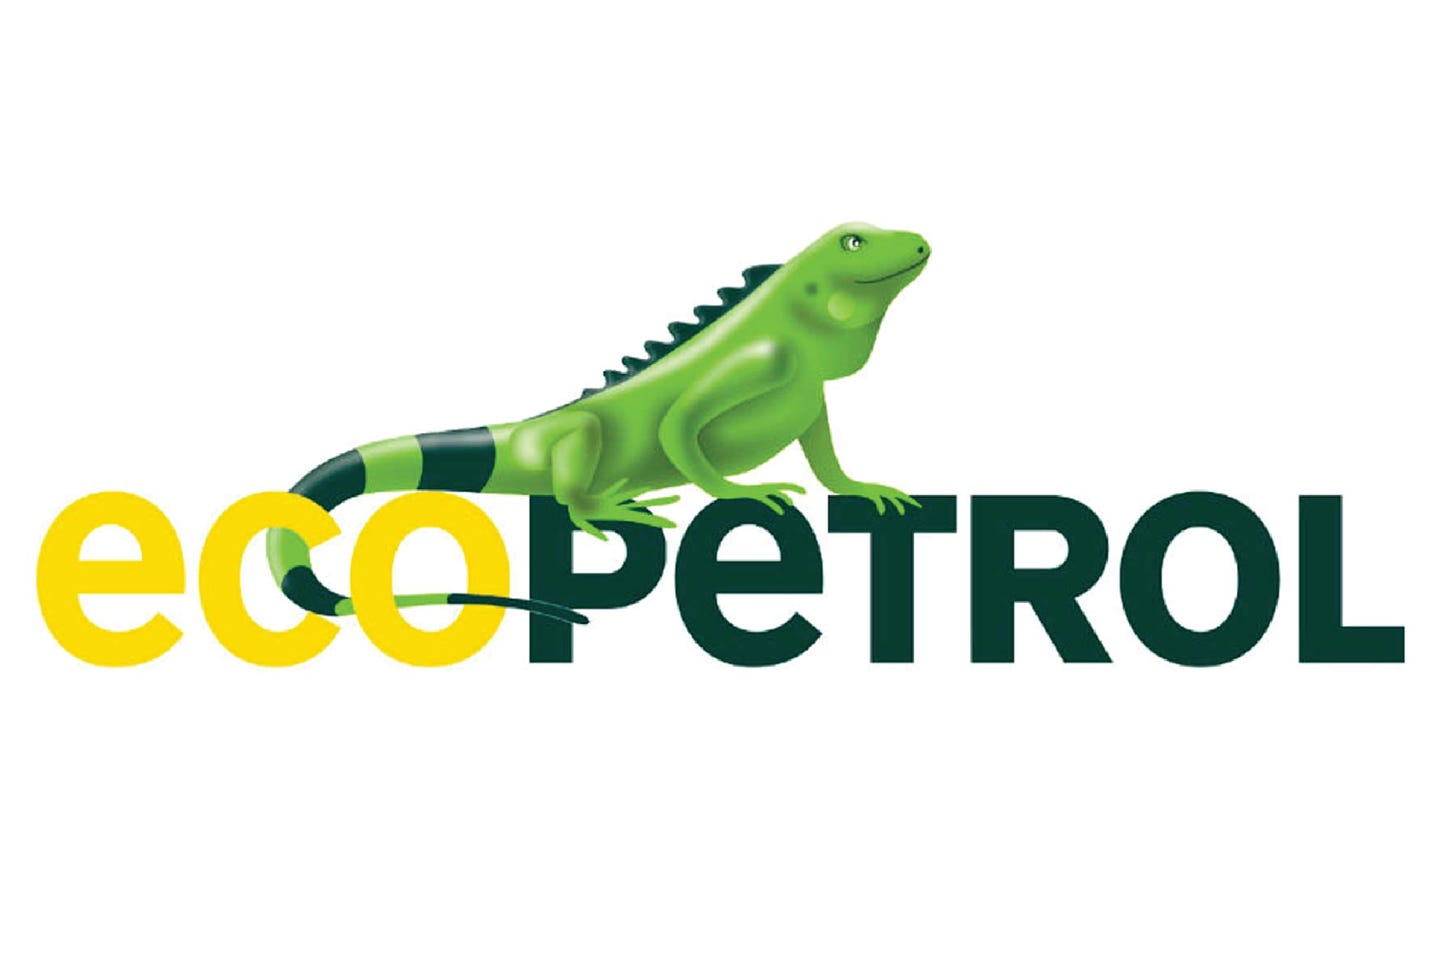 Ecopetrol logo - CMSoftlutions